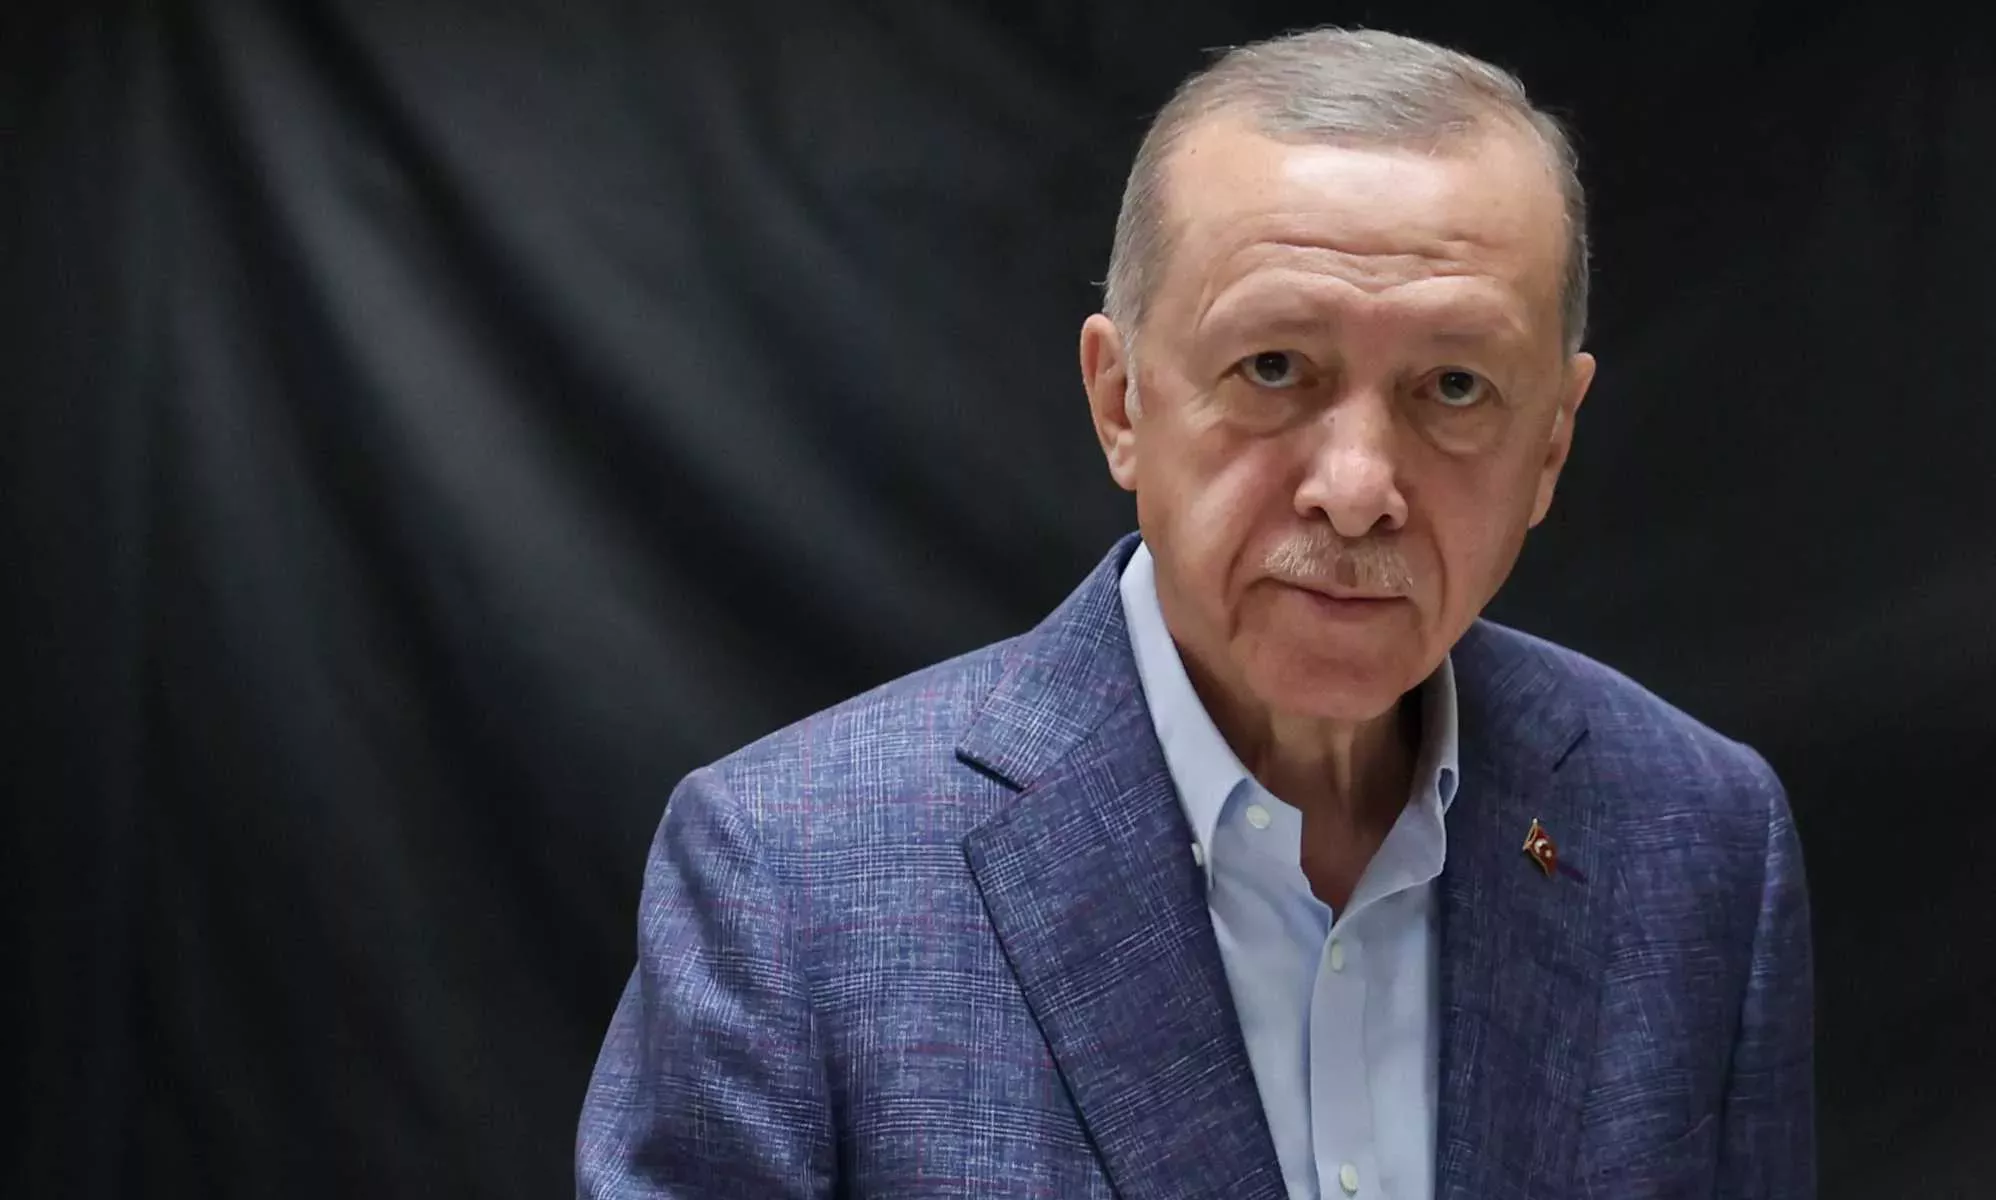 El presidente turco Erdoğan aprovecha su discurso de victoria electoral para apuntar a las 